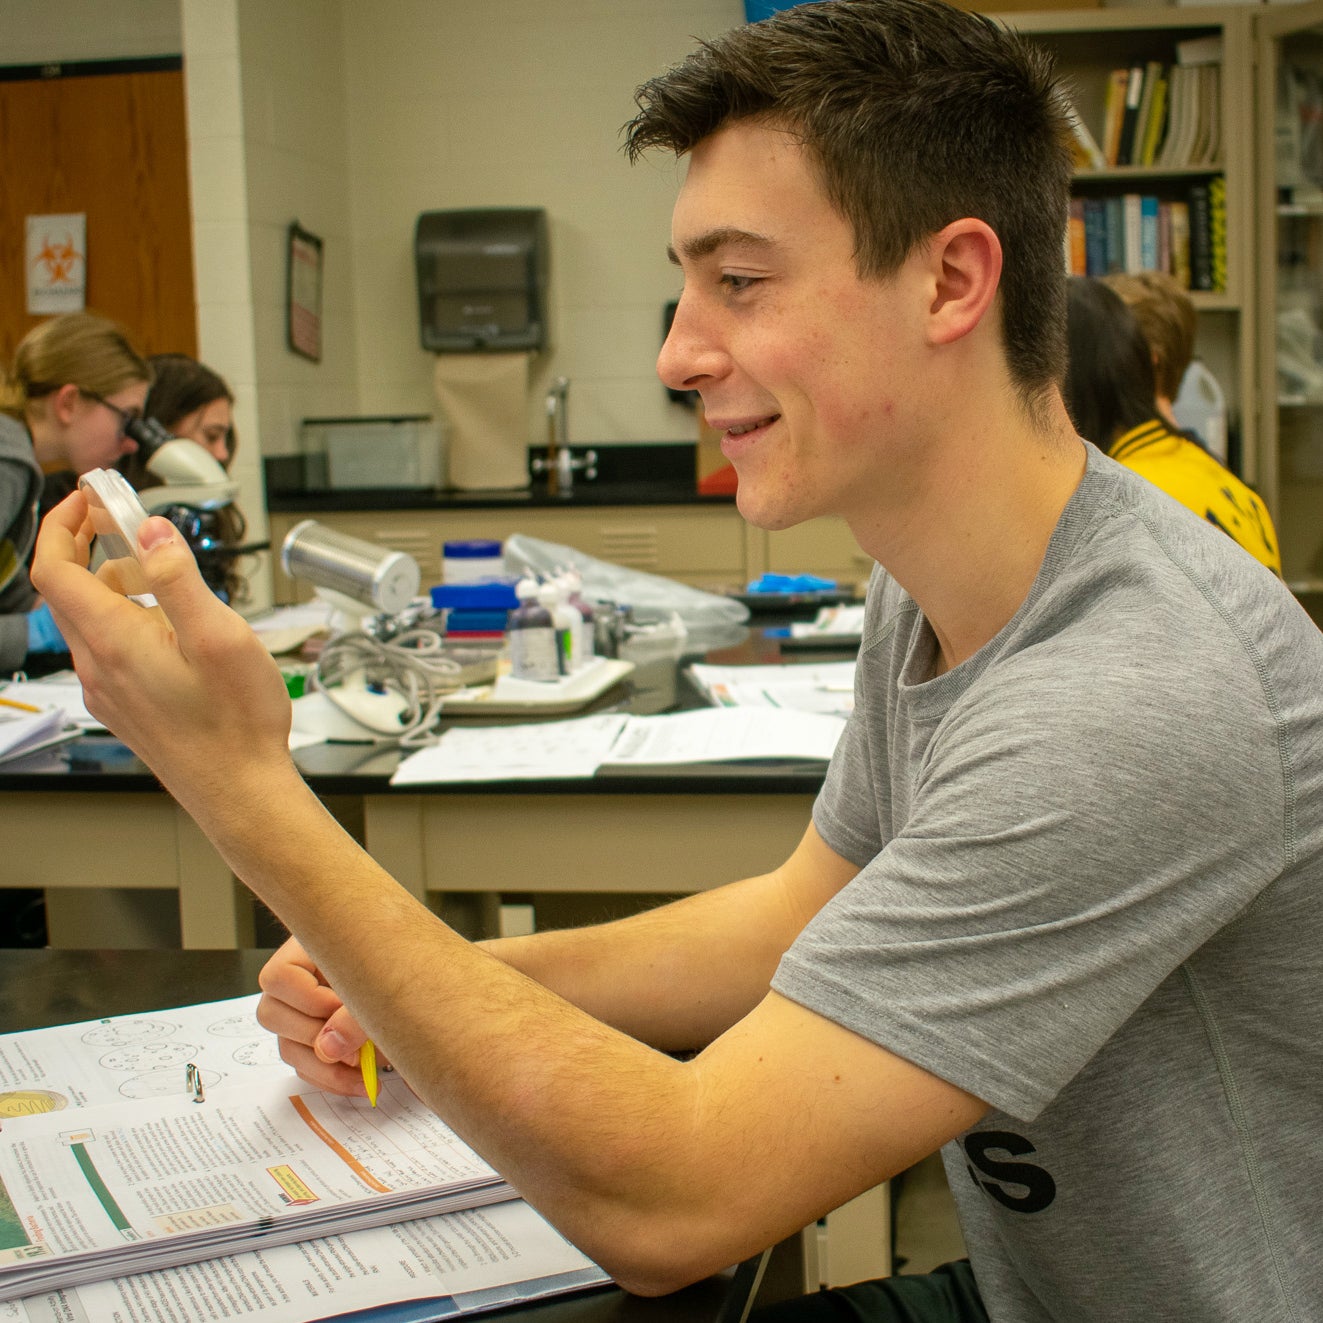 Student examining petri dish.